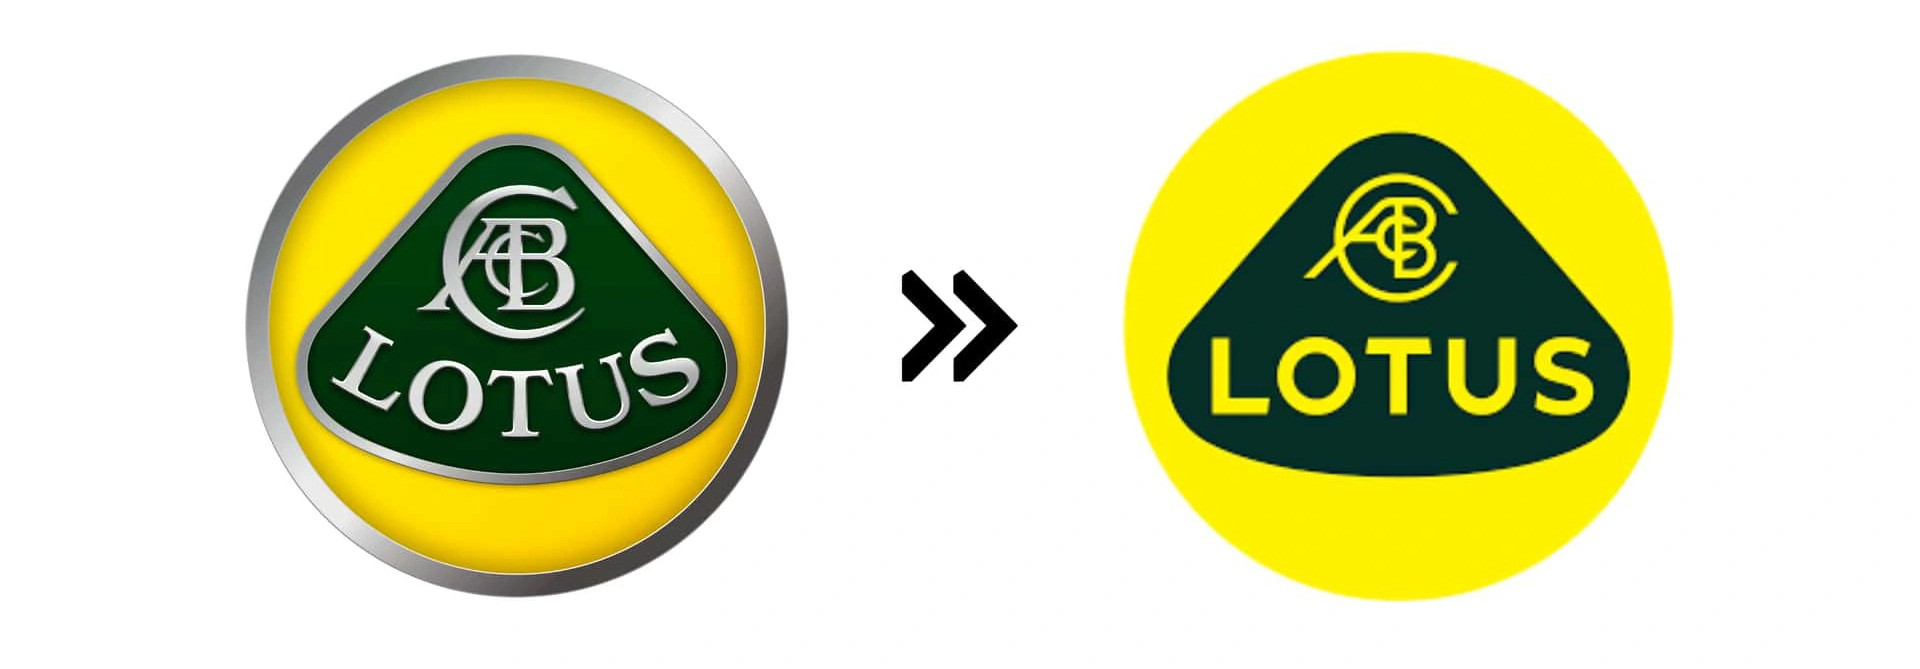 Lotus (2019): Hãng xe sắp tham chiến Việt Nam này nay sử dụng logo dạng 2D không viền, thay vì 3D viền bạc như trong quá khứ. Dòng chữ Lotus tại trung tâm cũng đã được đổi phông - Ảnh: Motor1